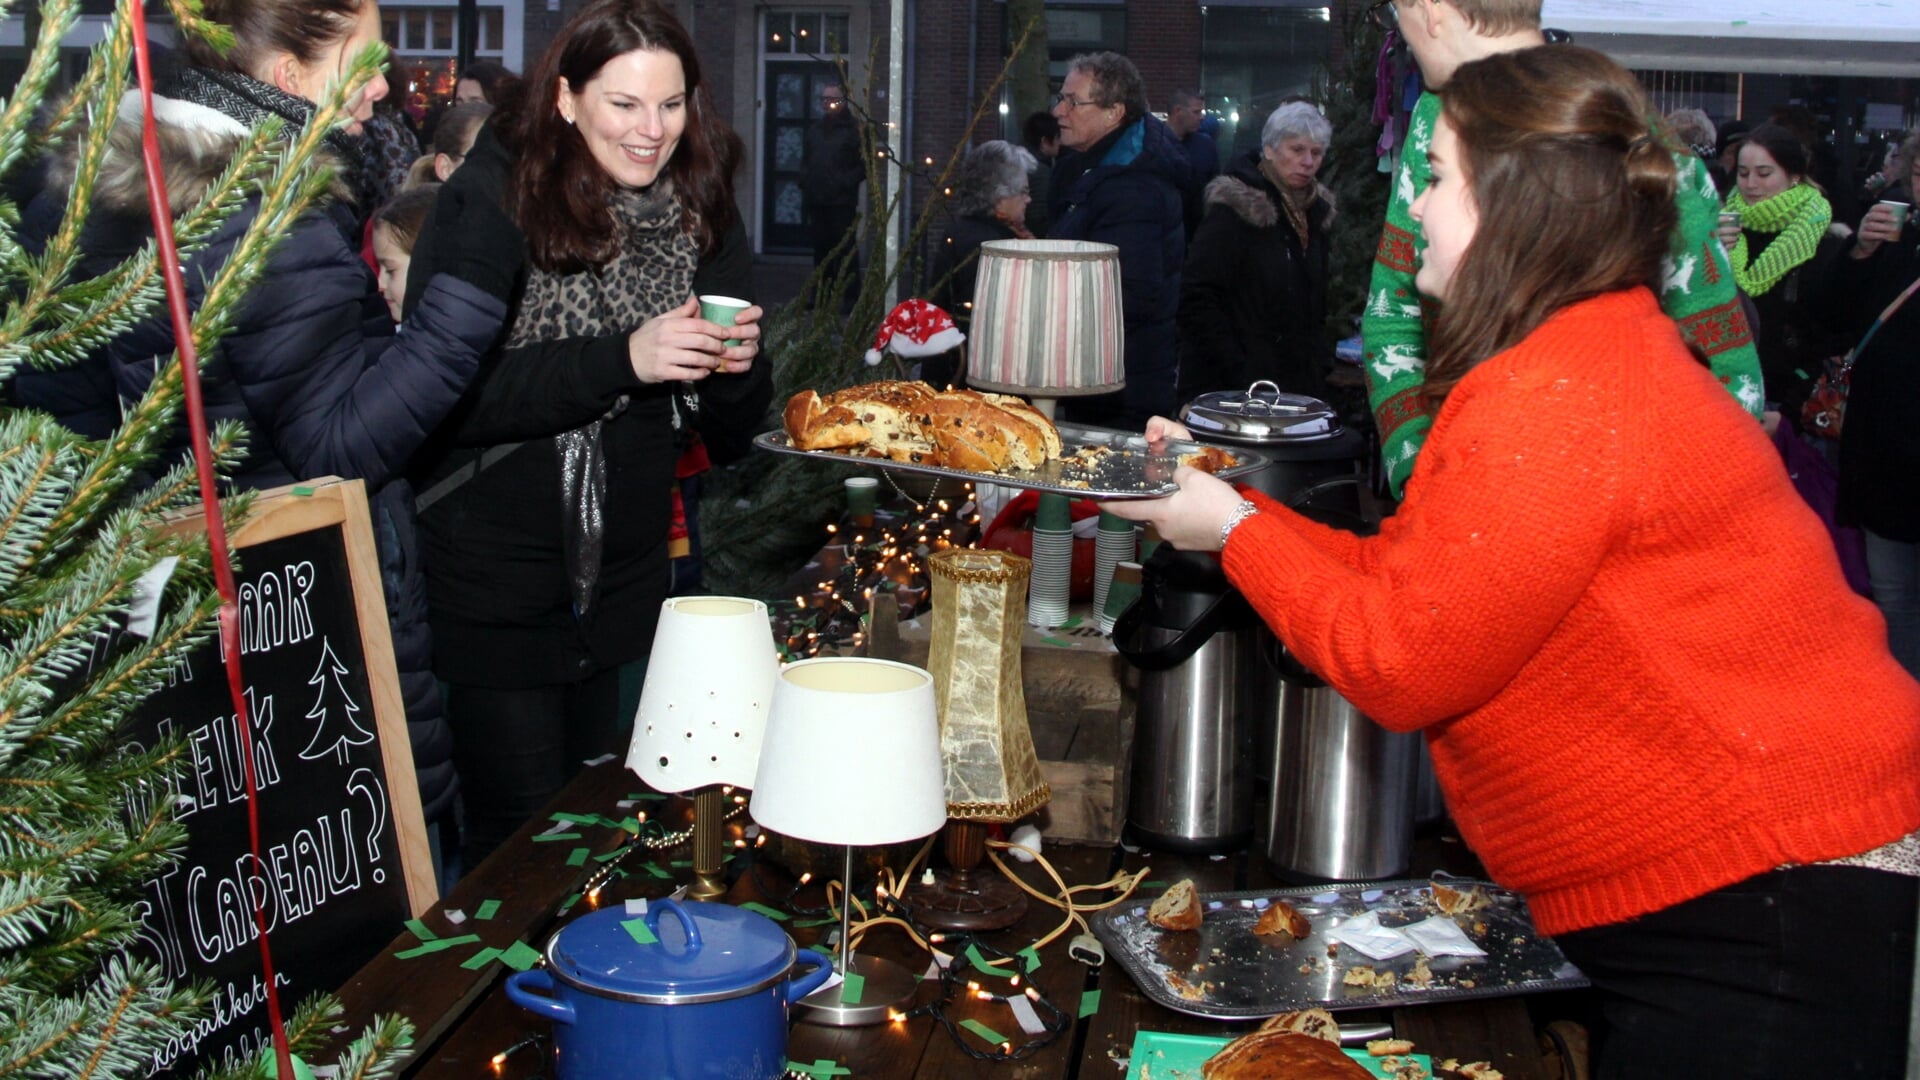 Gezelligheid, lekker eten en vermaak: ondernemers slaan de handen ineen voor een groots opgezette kerstmarkt in hartje Boxtel.